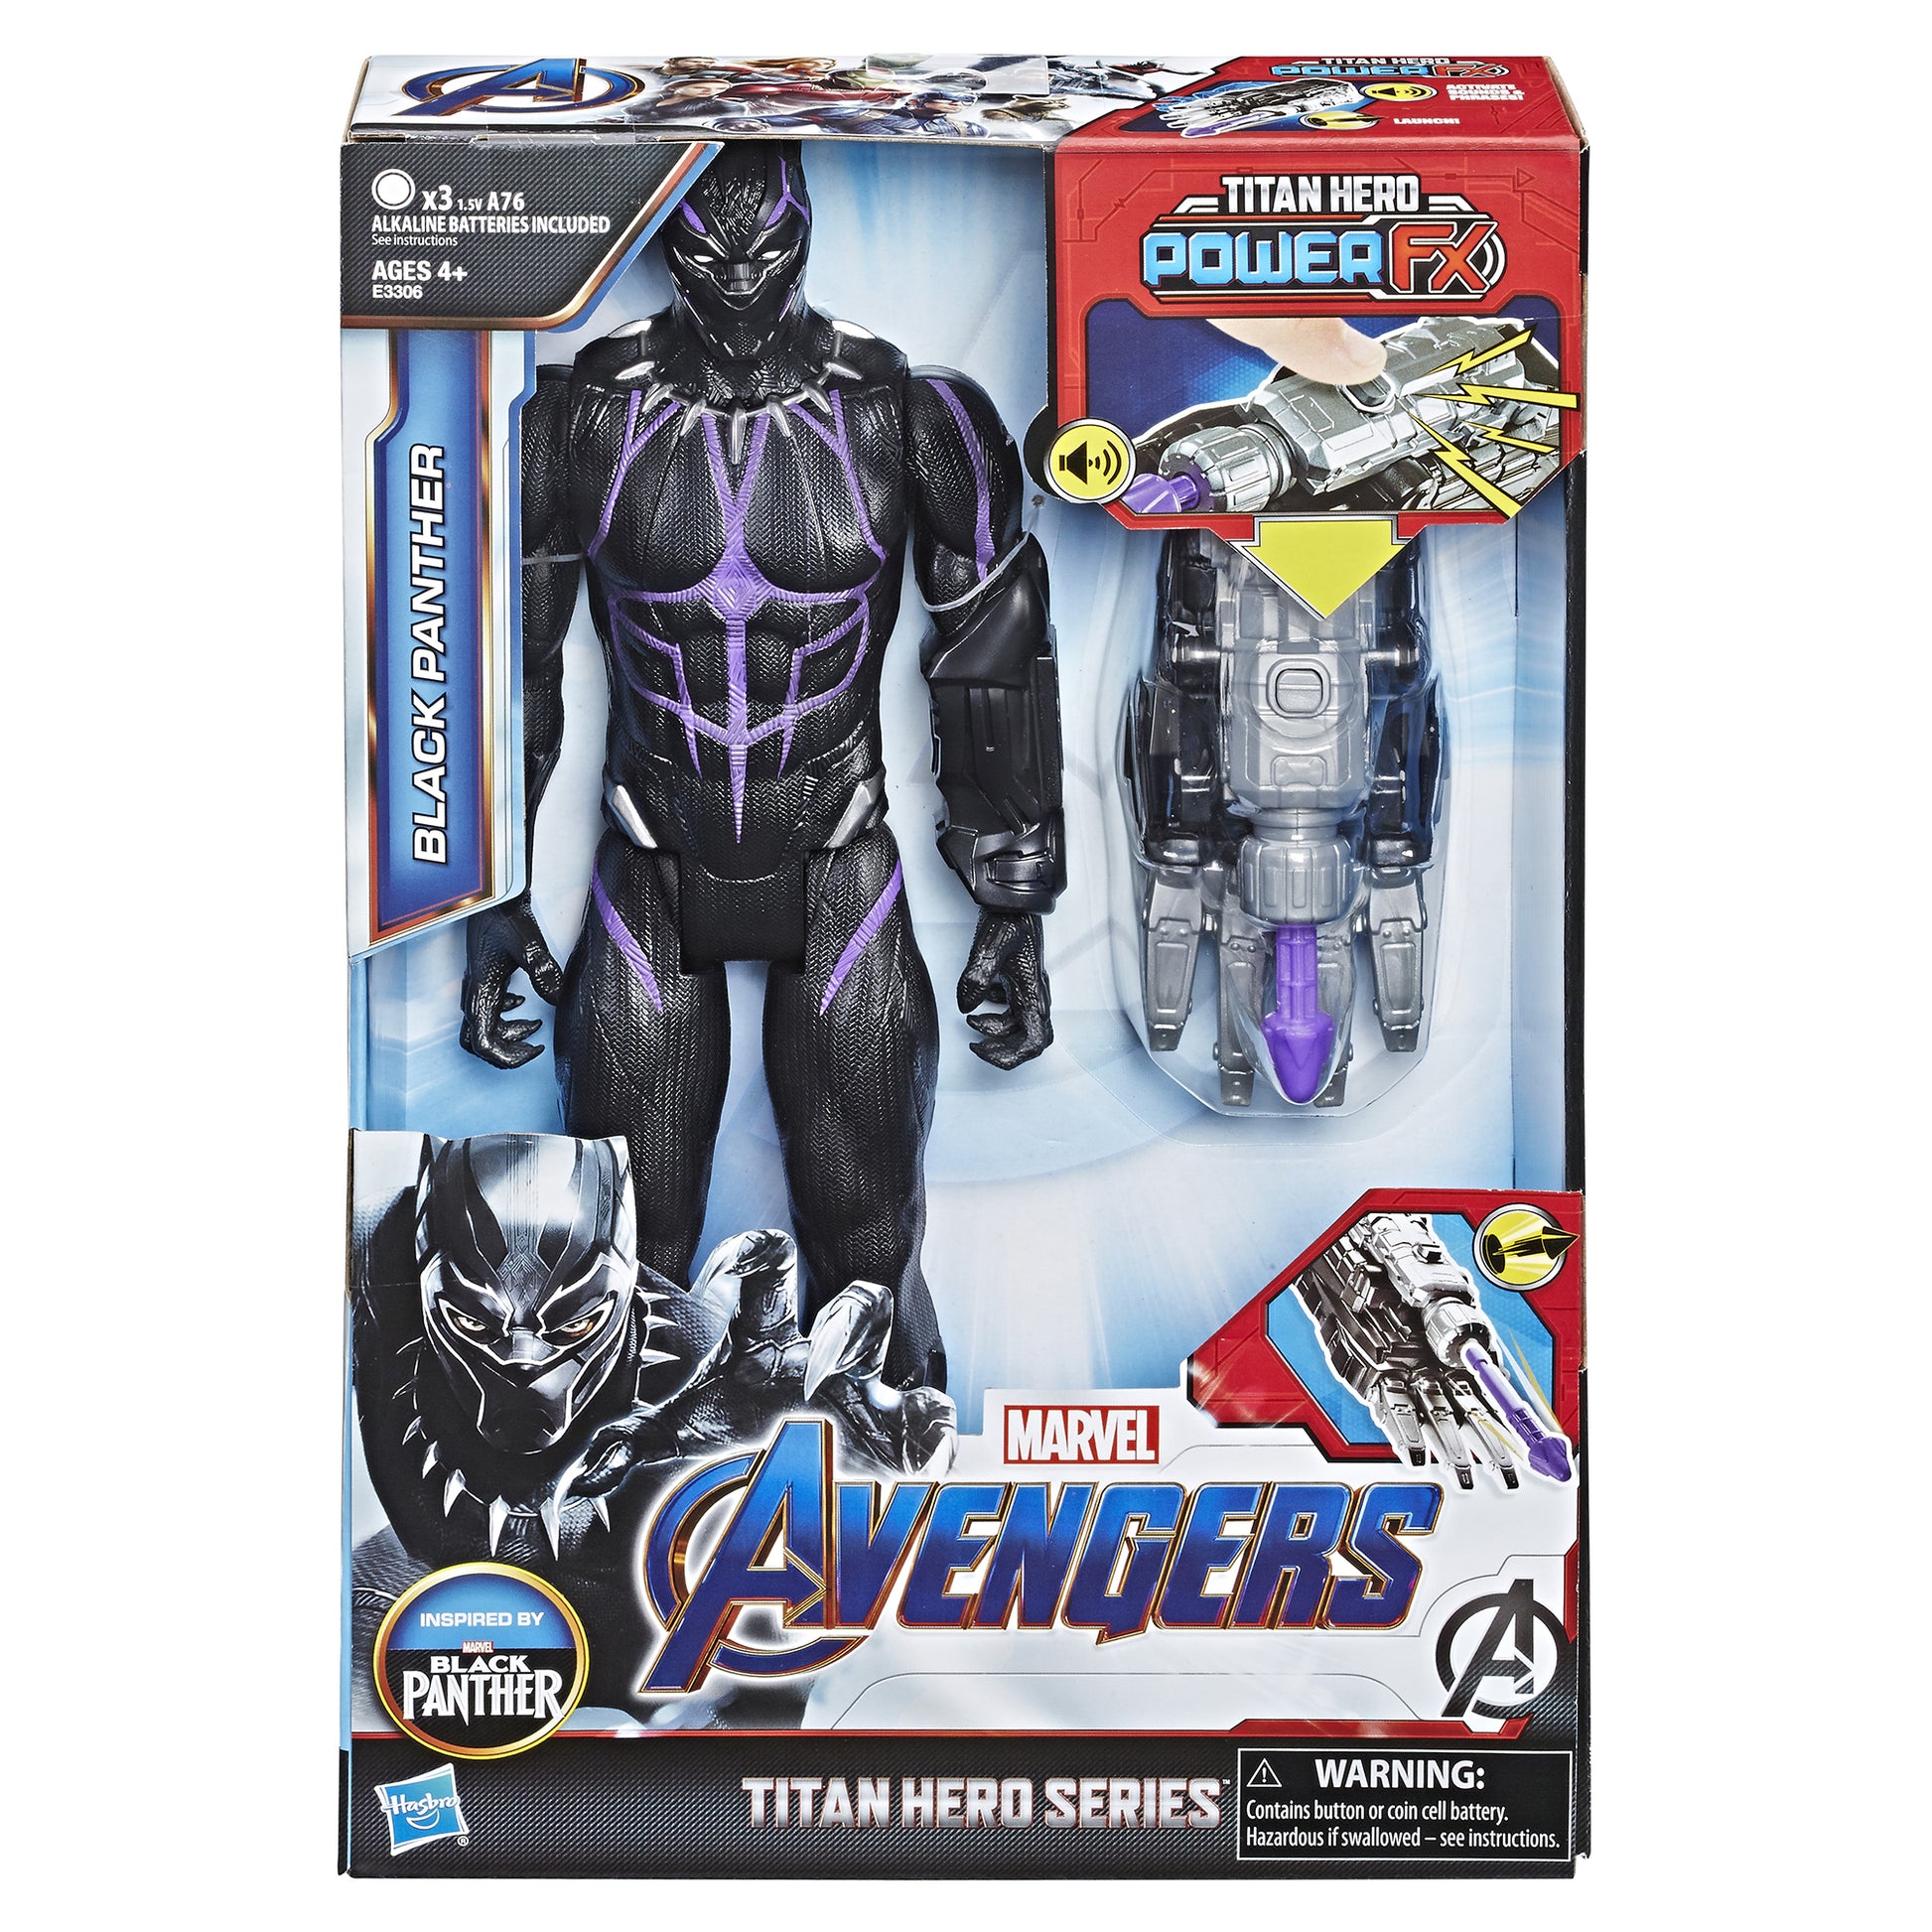 Marvel Avengers: Endgame Titan Hero Power FX Black Panther Figure –